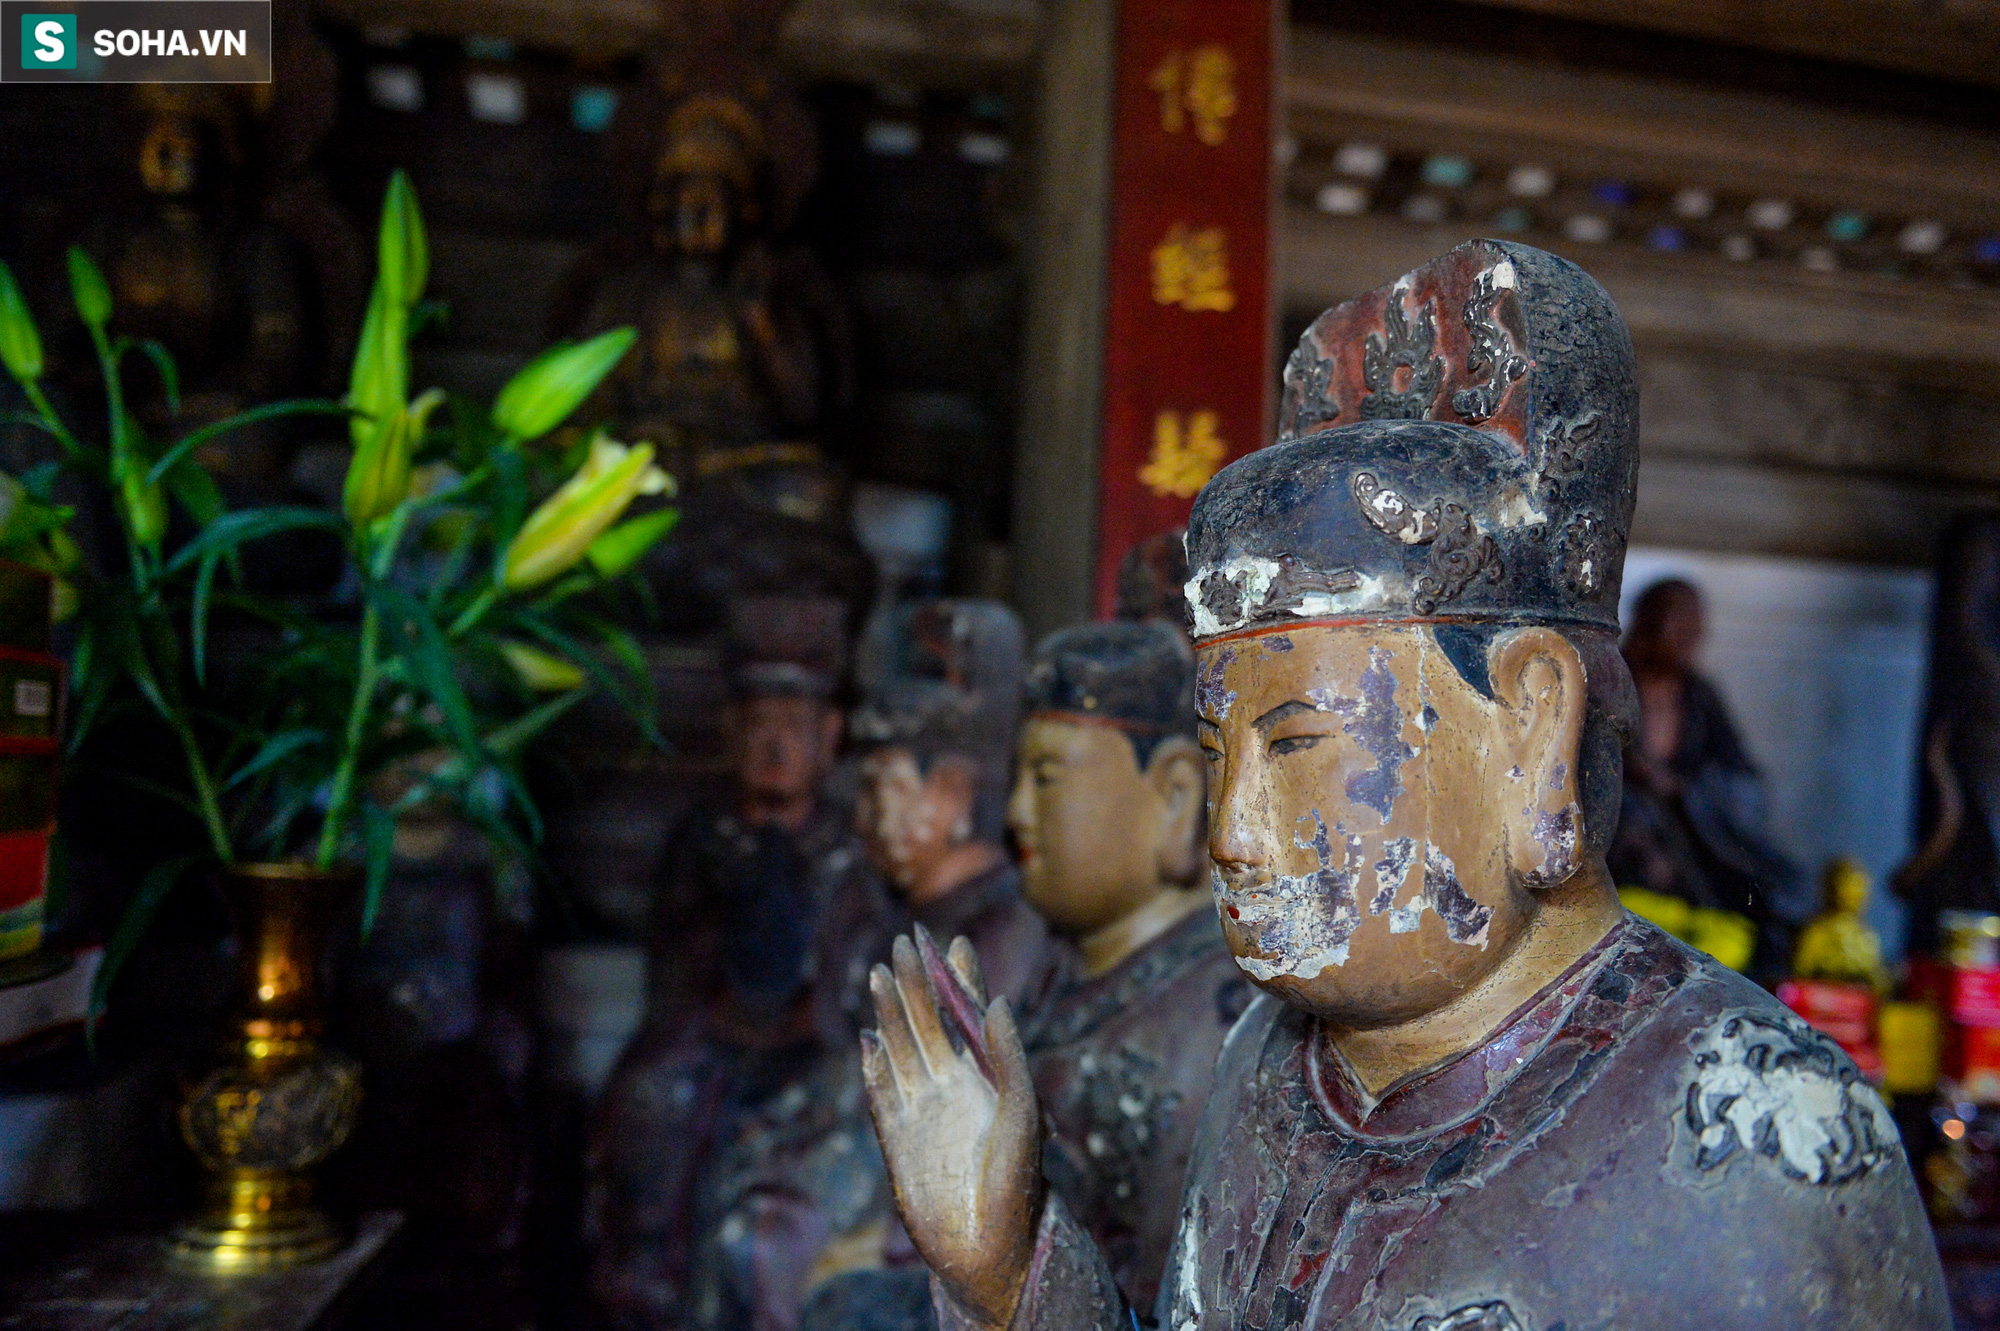  Các vị La Hán chùa Tây Phương đang xuống cấp nghiêm trọng, bong tróc hết lớp sơn son - Ảnh 7.